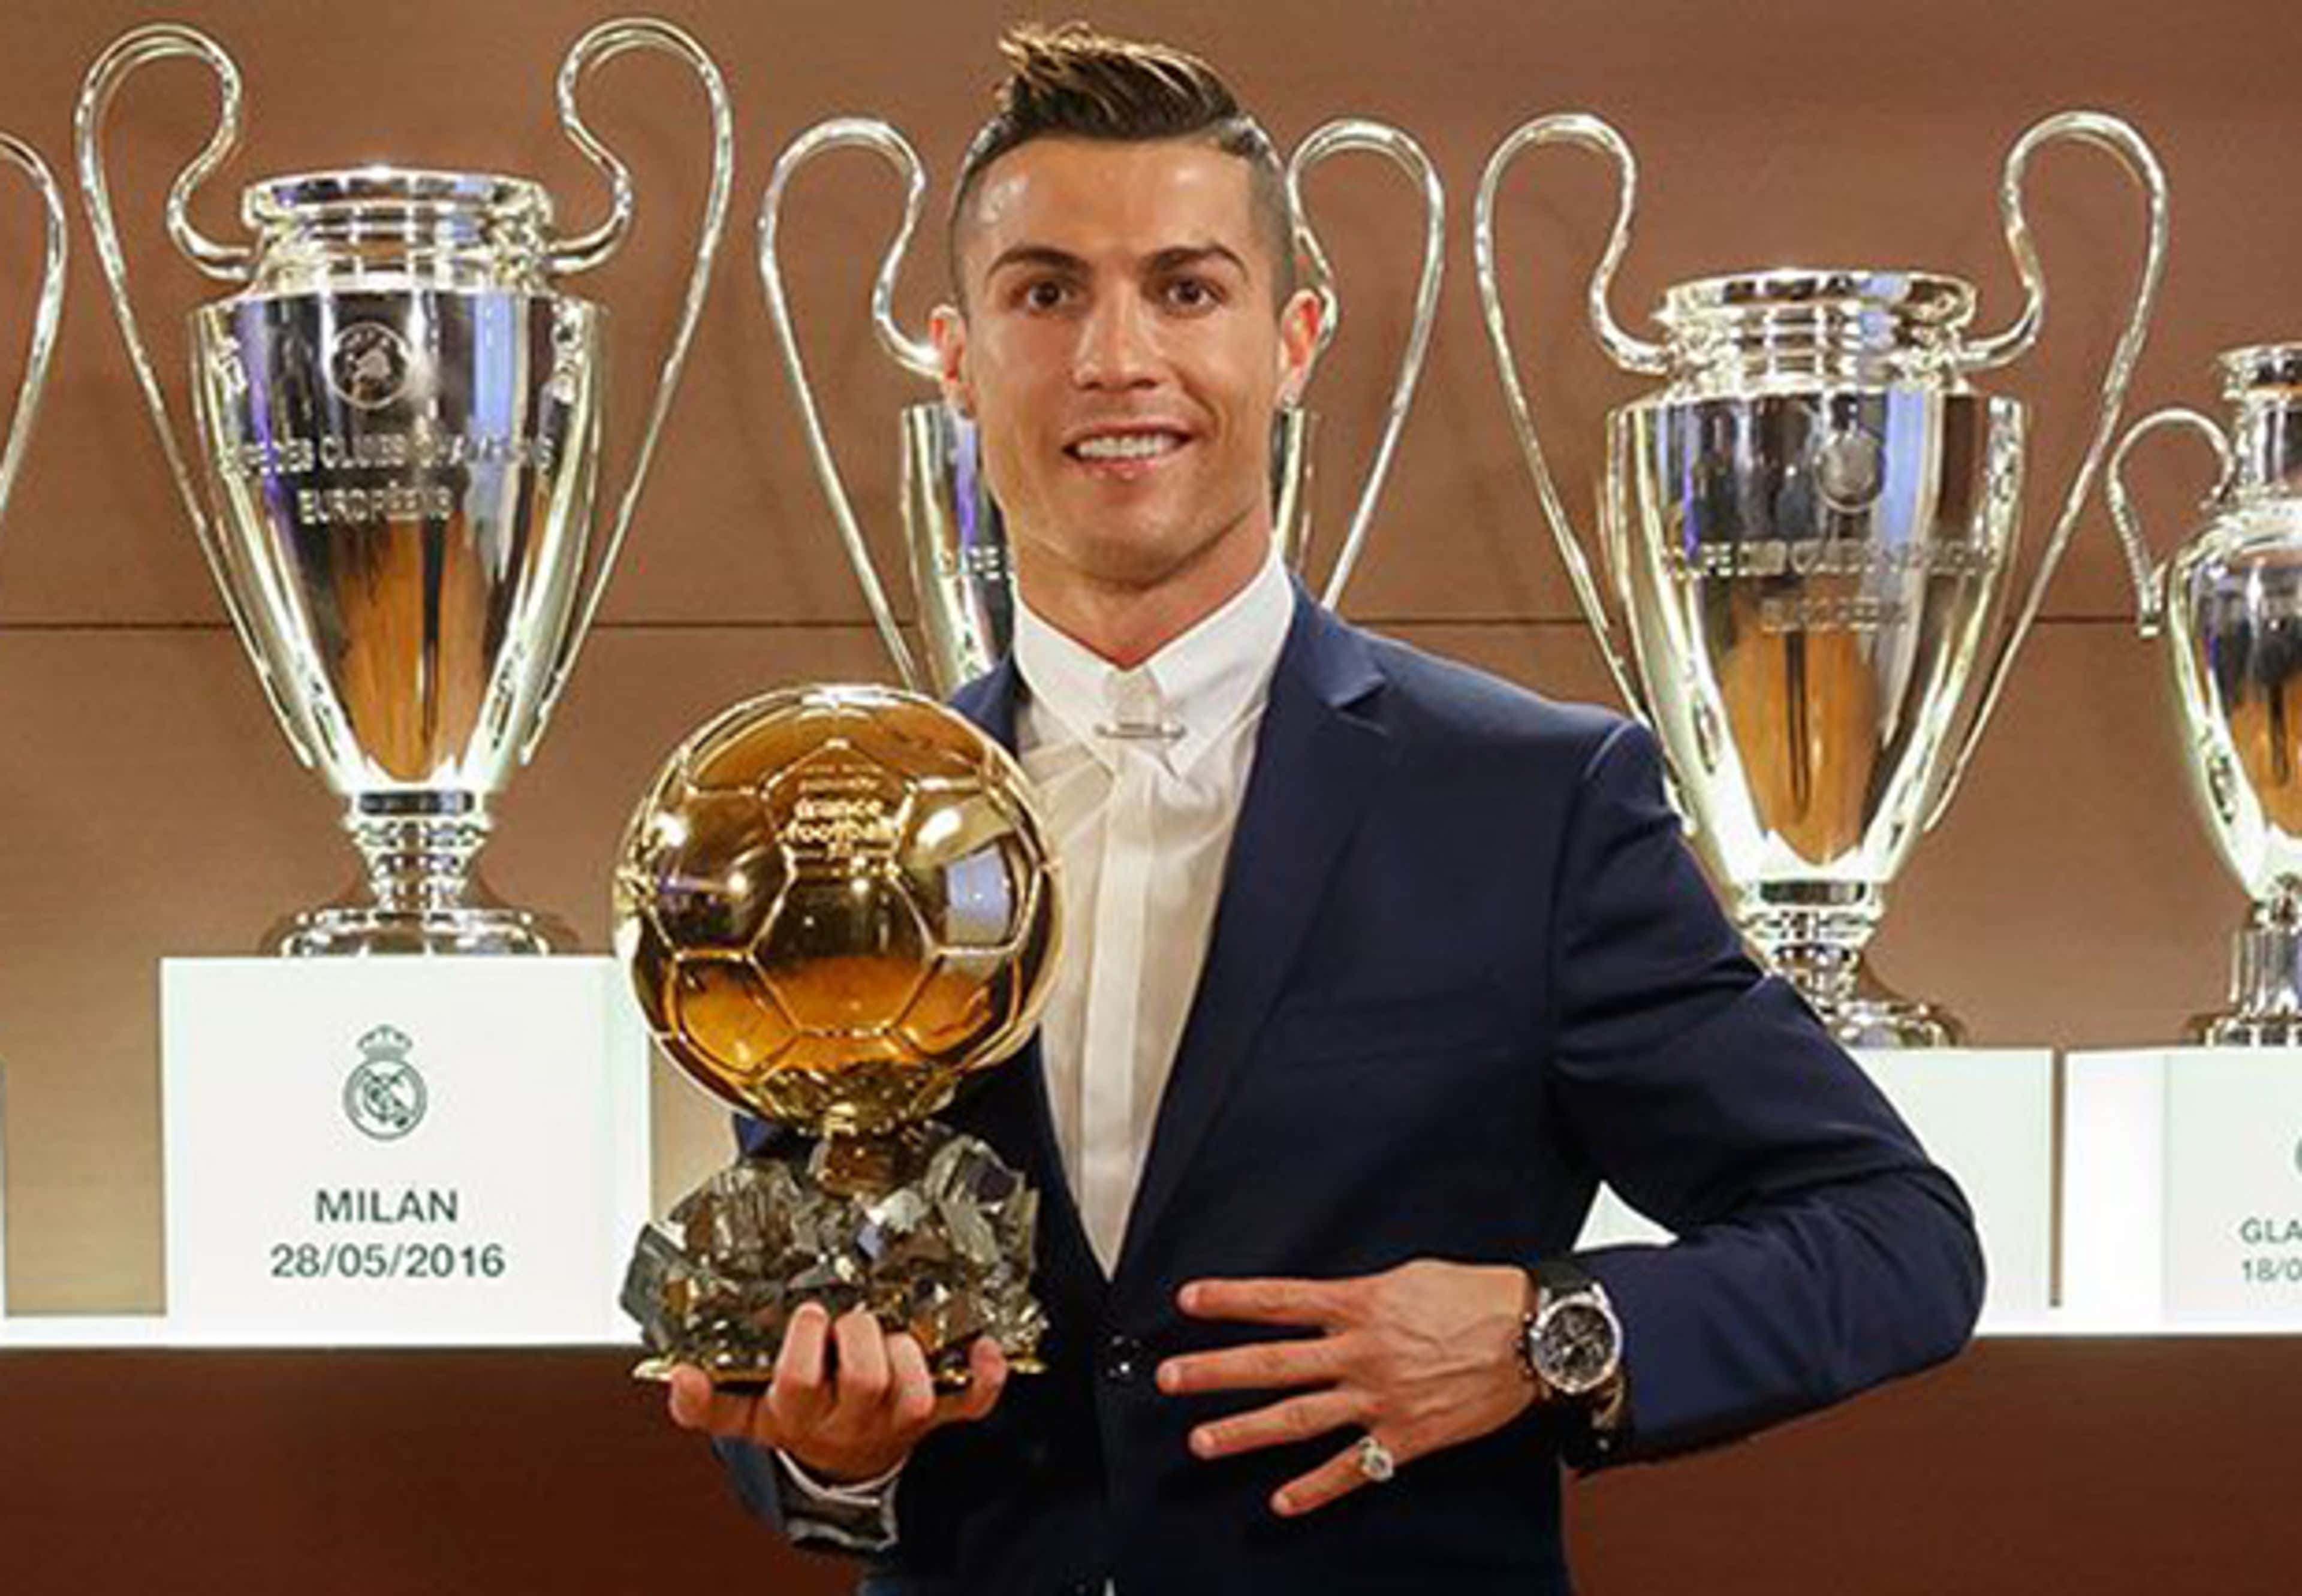 Братья награды. Кристиано Роналдо с золотым мячом. Криштиану Роналду золотой мяч 2017. Криштиану Роналду золотой мяч 2016. Cristiano Ronaldo золотой мяч.